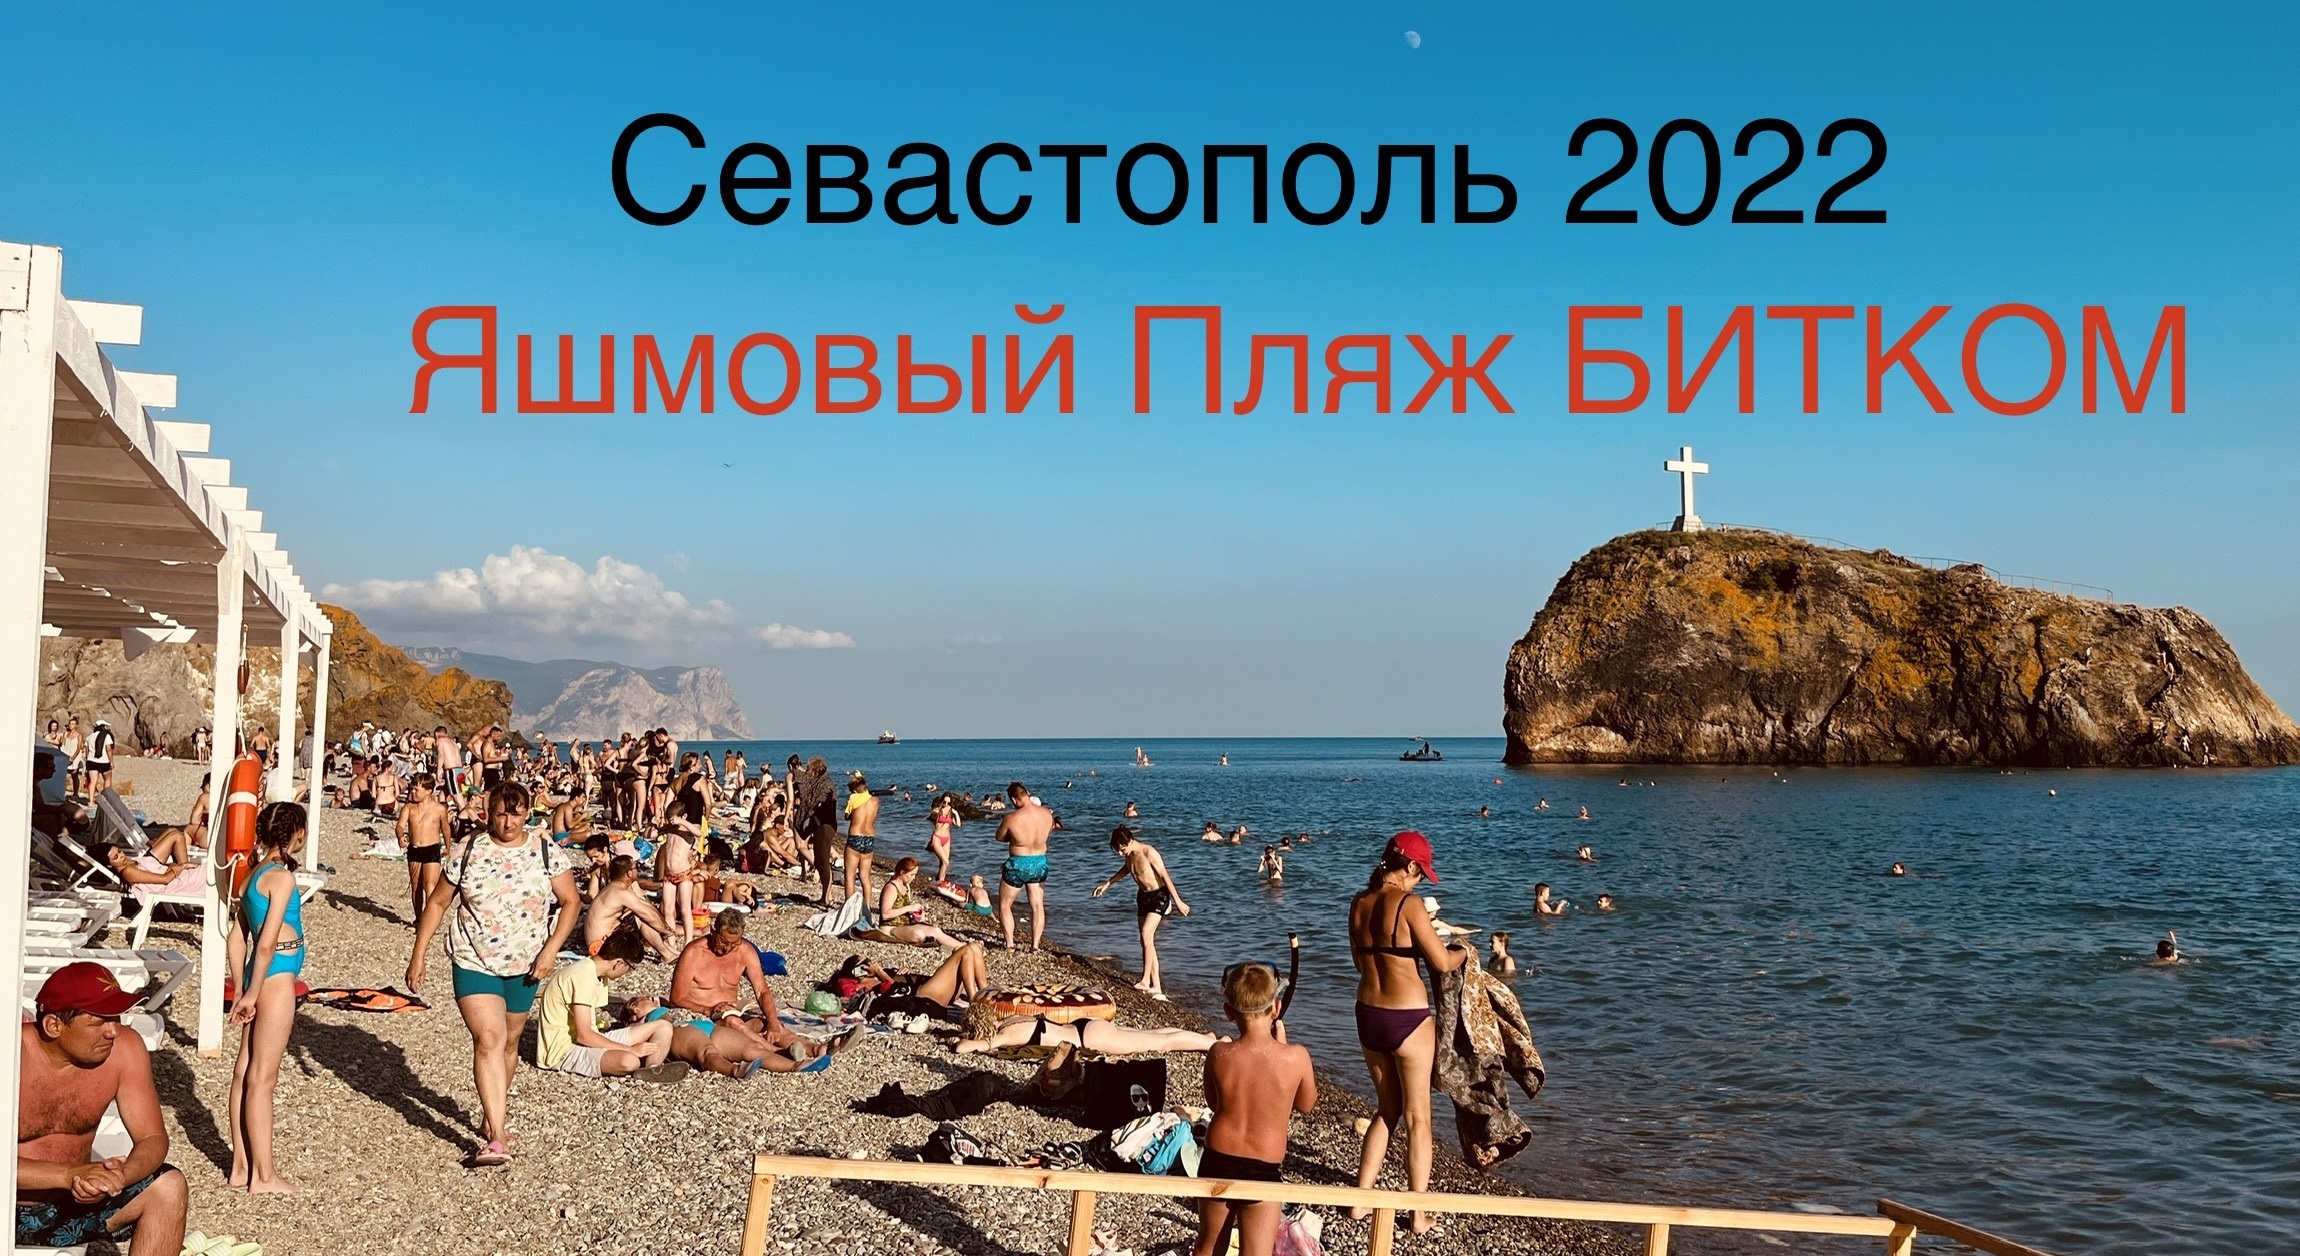 Яшмовый пляж 2022